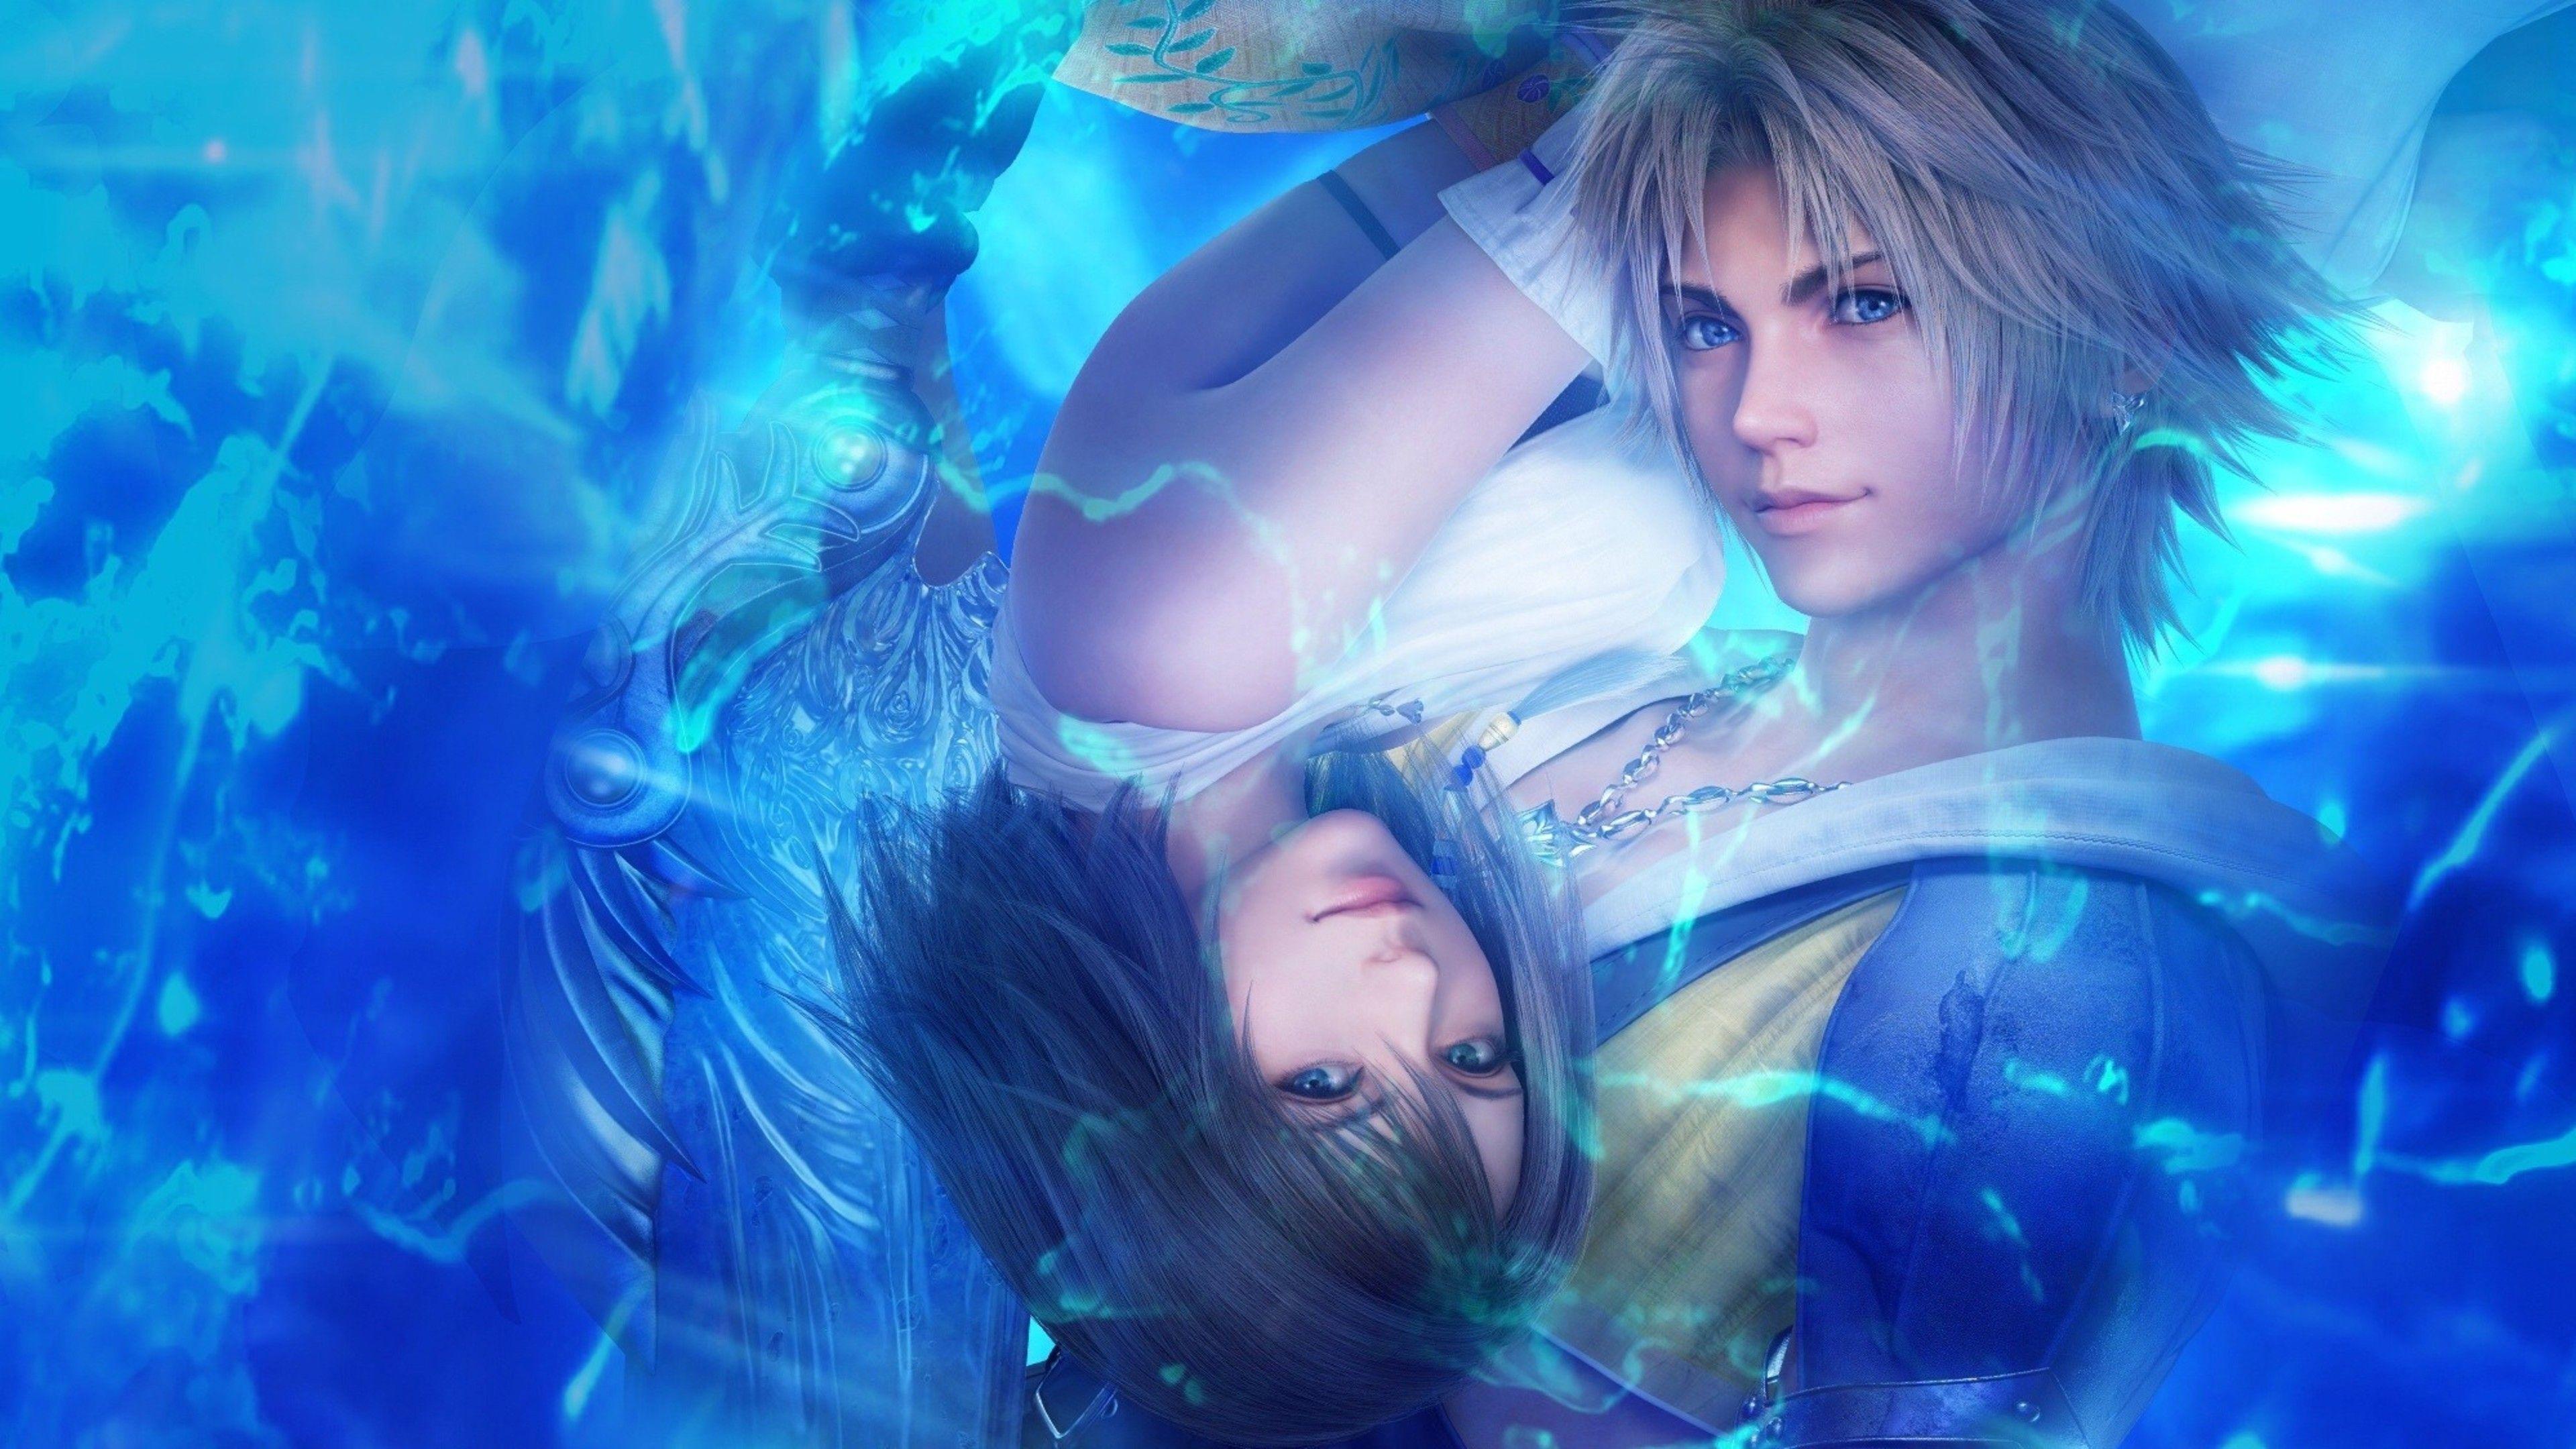 Final Fantasy X 2 Yuna & Tidus